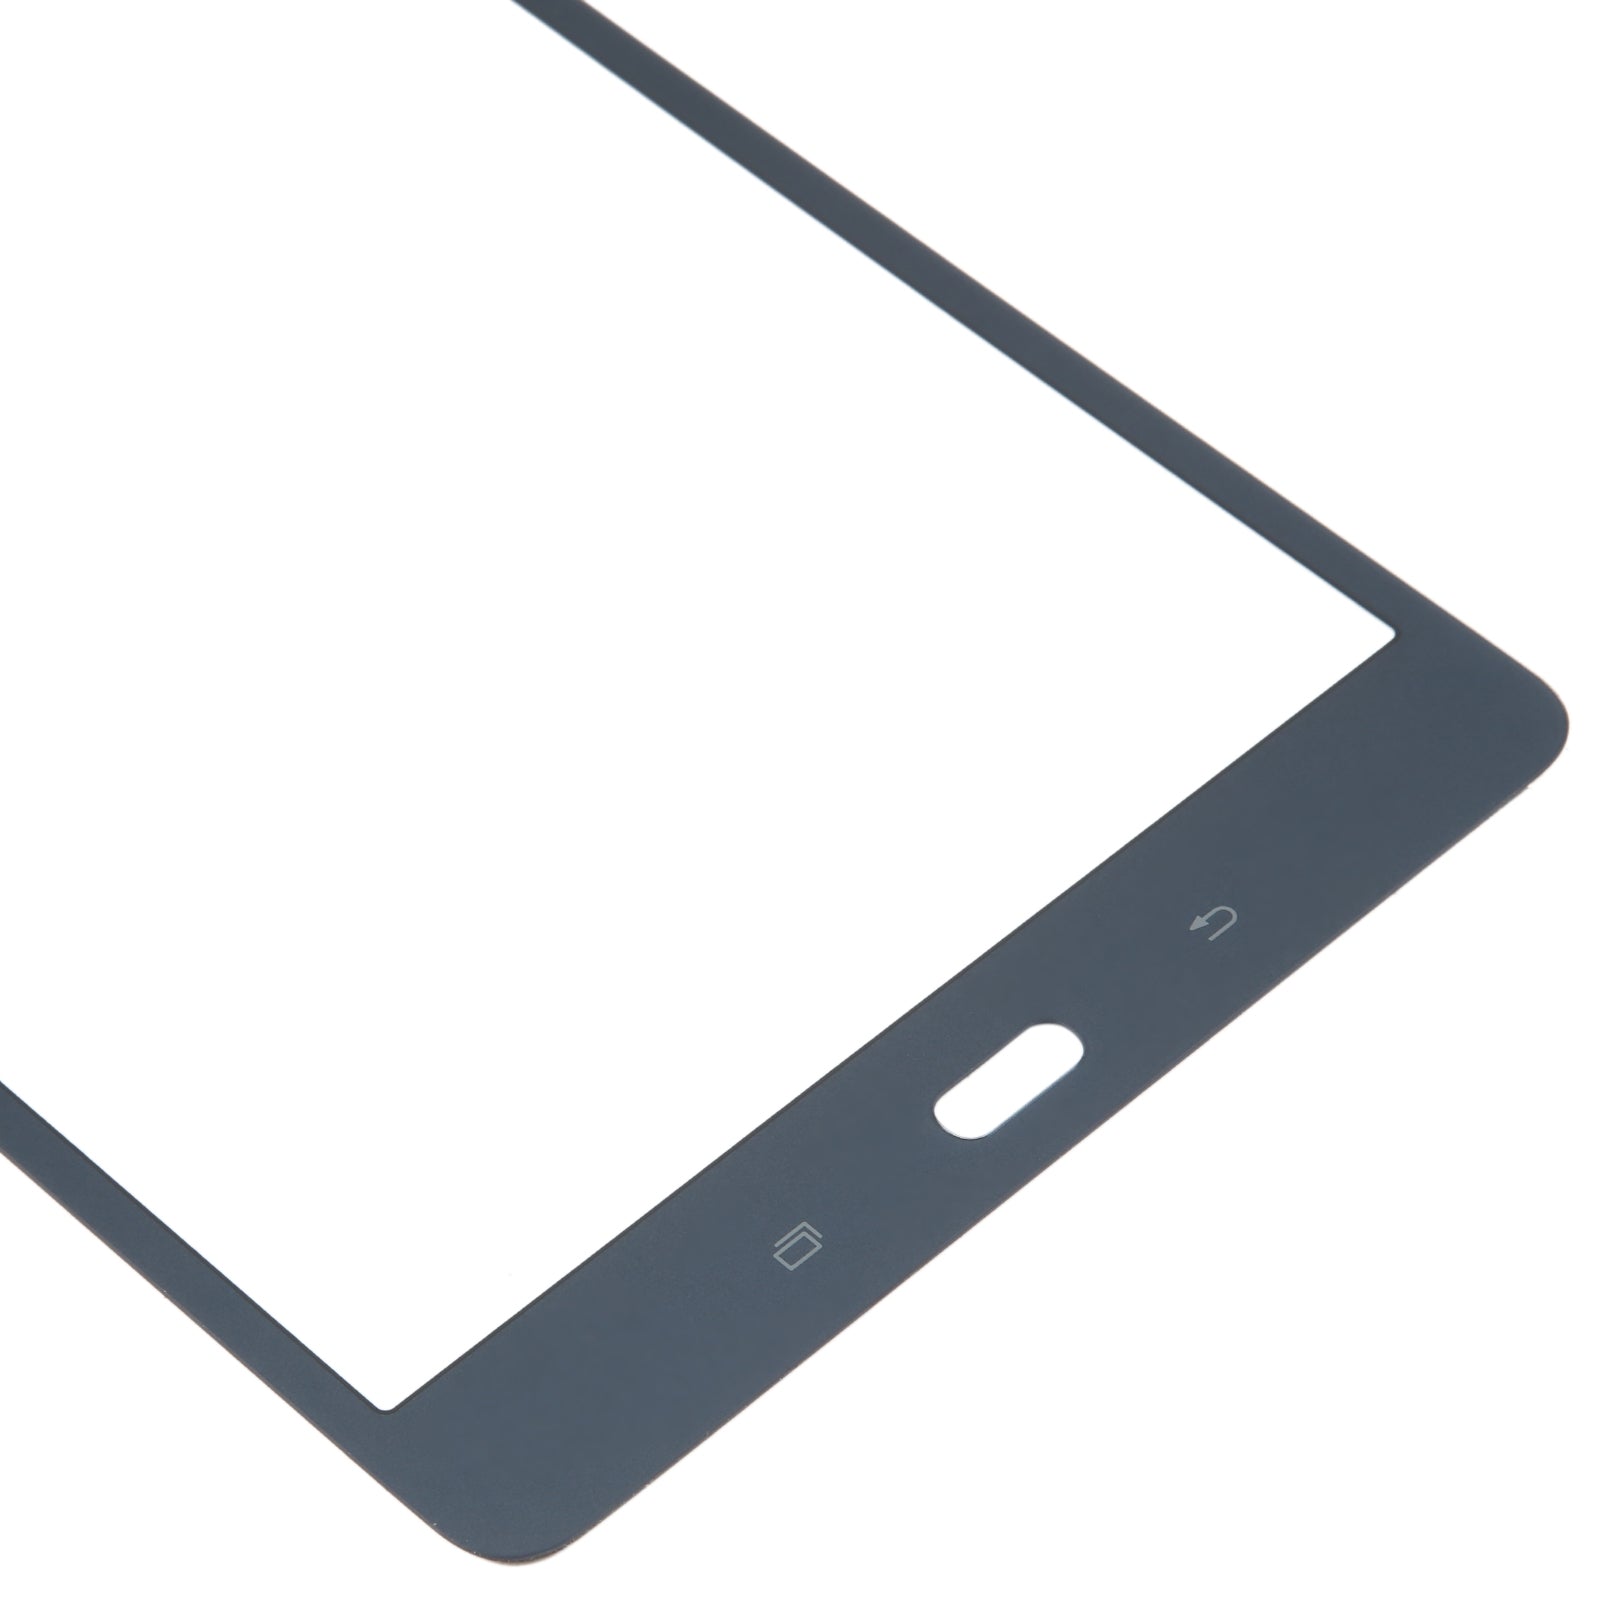 Pantalla Tactil Digitalizador Samsung Galaxy Tab A 8.0 / T355 3G Azul